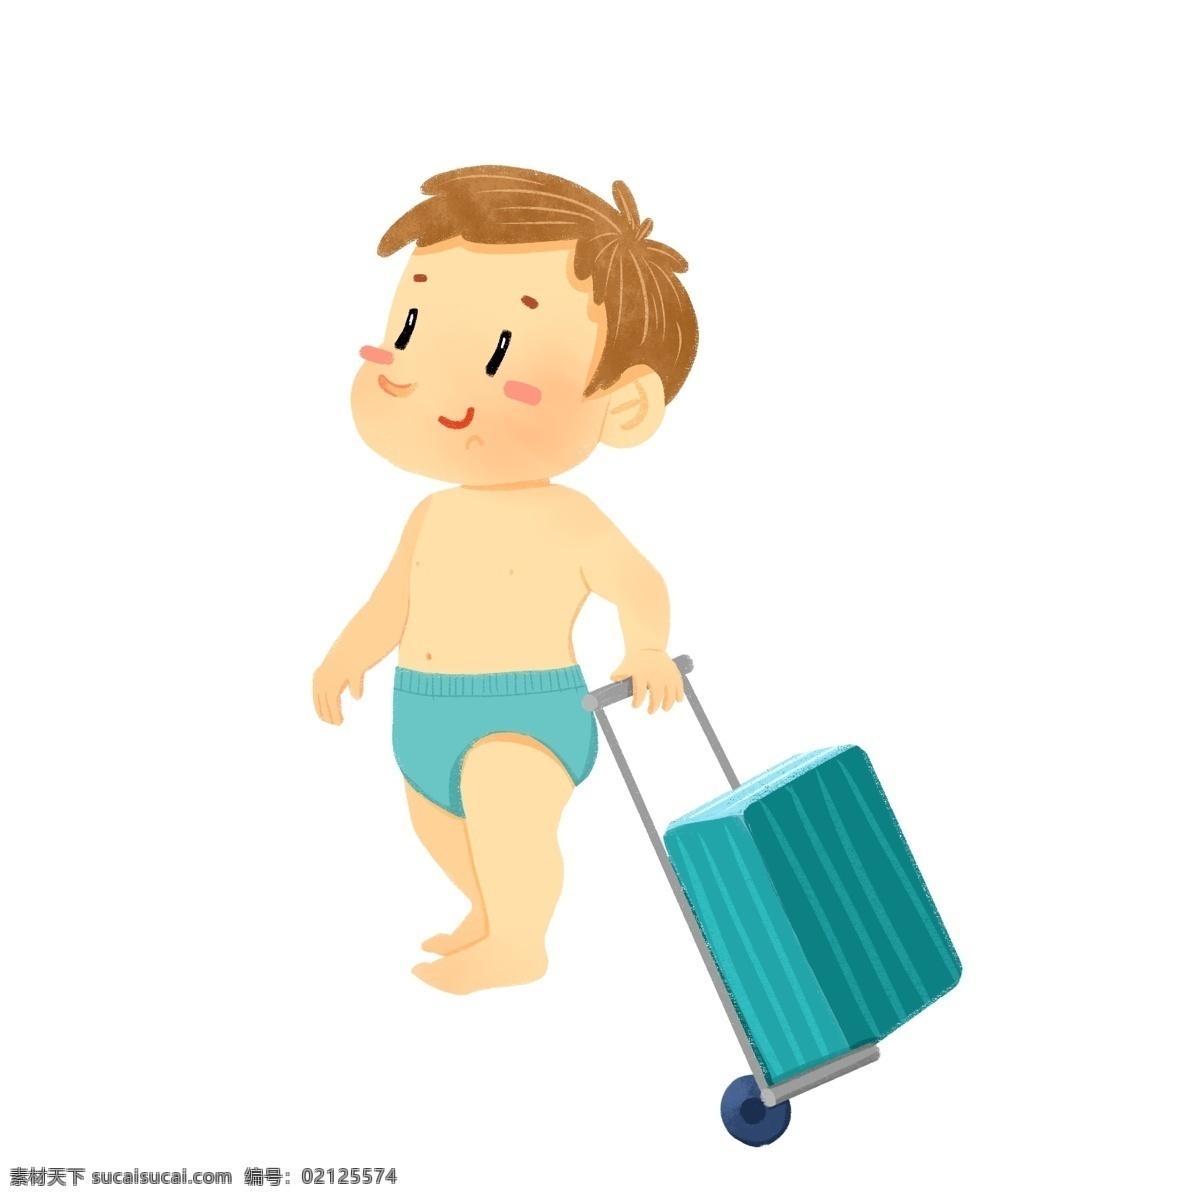 小 婴儿 开心 拉 拉杆箱 小孩 可爱 高兴 旅行 行李 尿不湿 拉拉裤 baby 小屁屁 卡通 人物 走路 站立